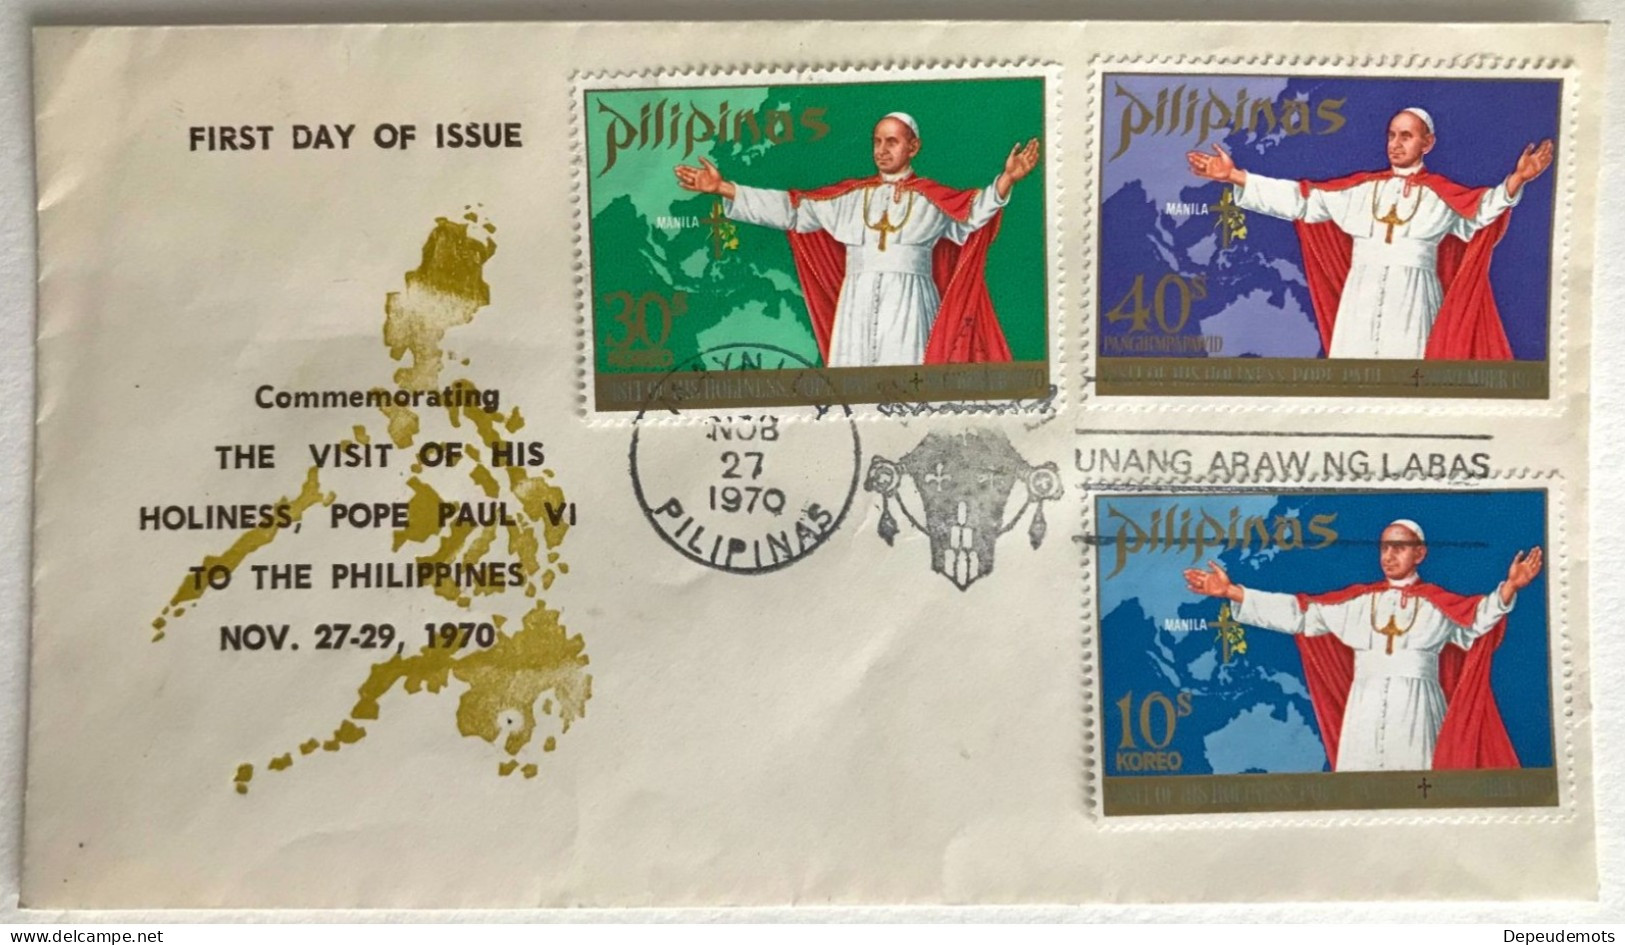 Timbre - PHILIPPINES - Visite Du Pape Paul VI - Novembre 1970 - Enveloppe 1er Jour - Premier Jour D'émission - Pilipinas - Philippines